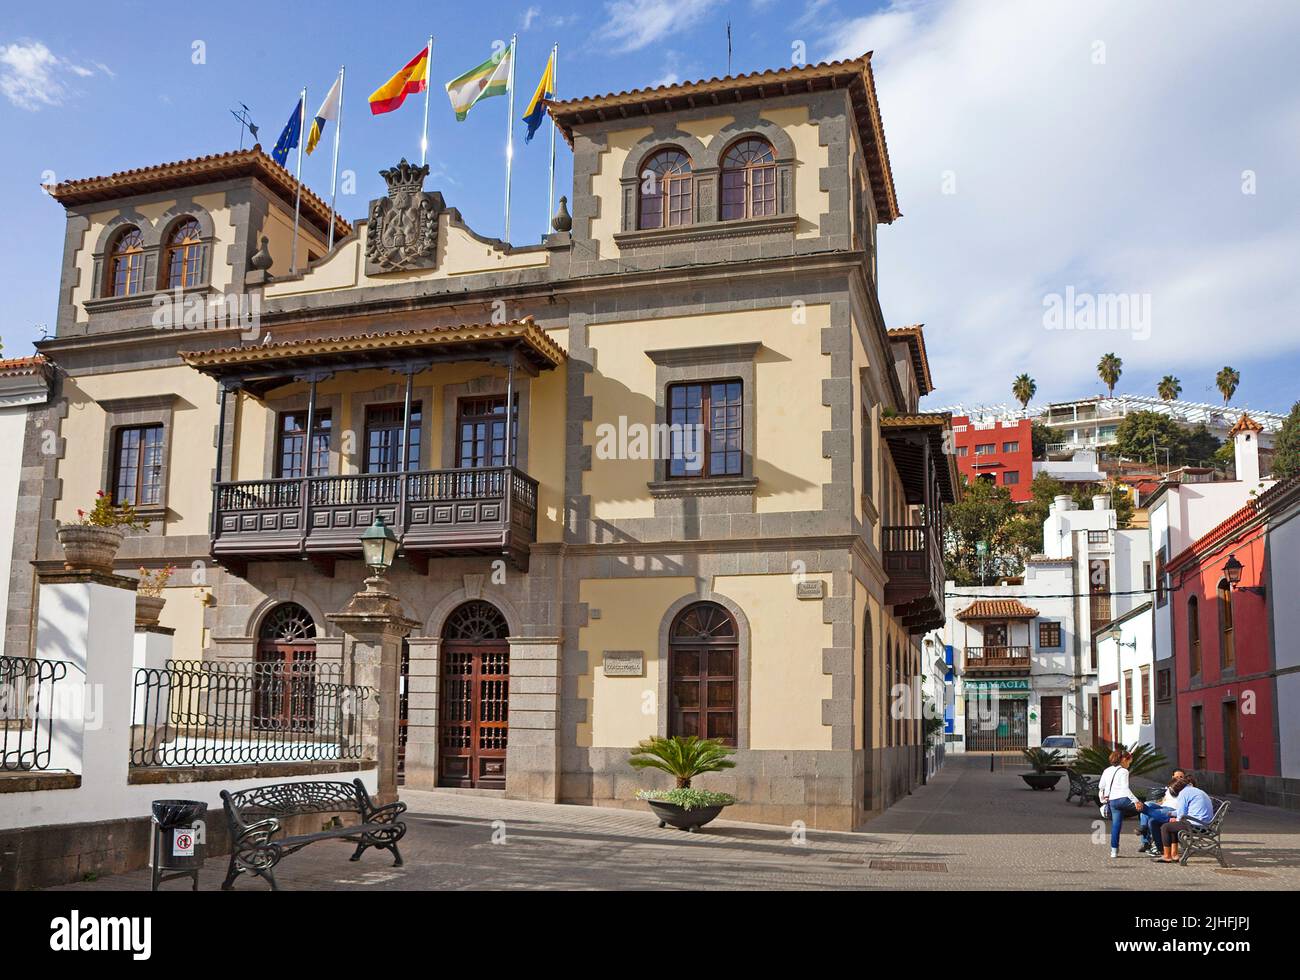 Municipio con tradizionali balconi in legno, Teror, Grand Canary, Isole Canarie, Spagna, Europa Foto Stock